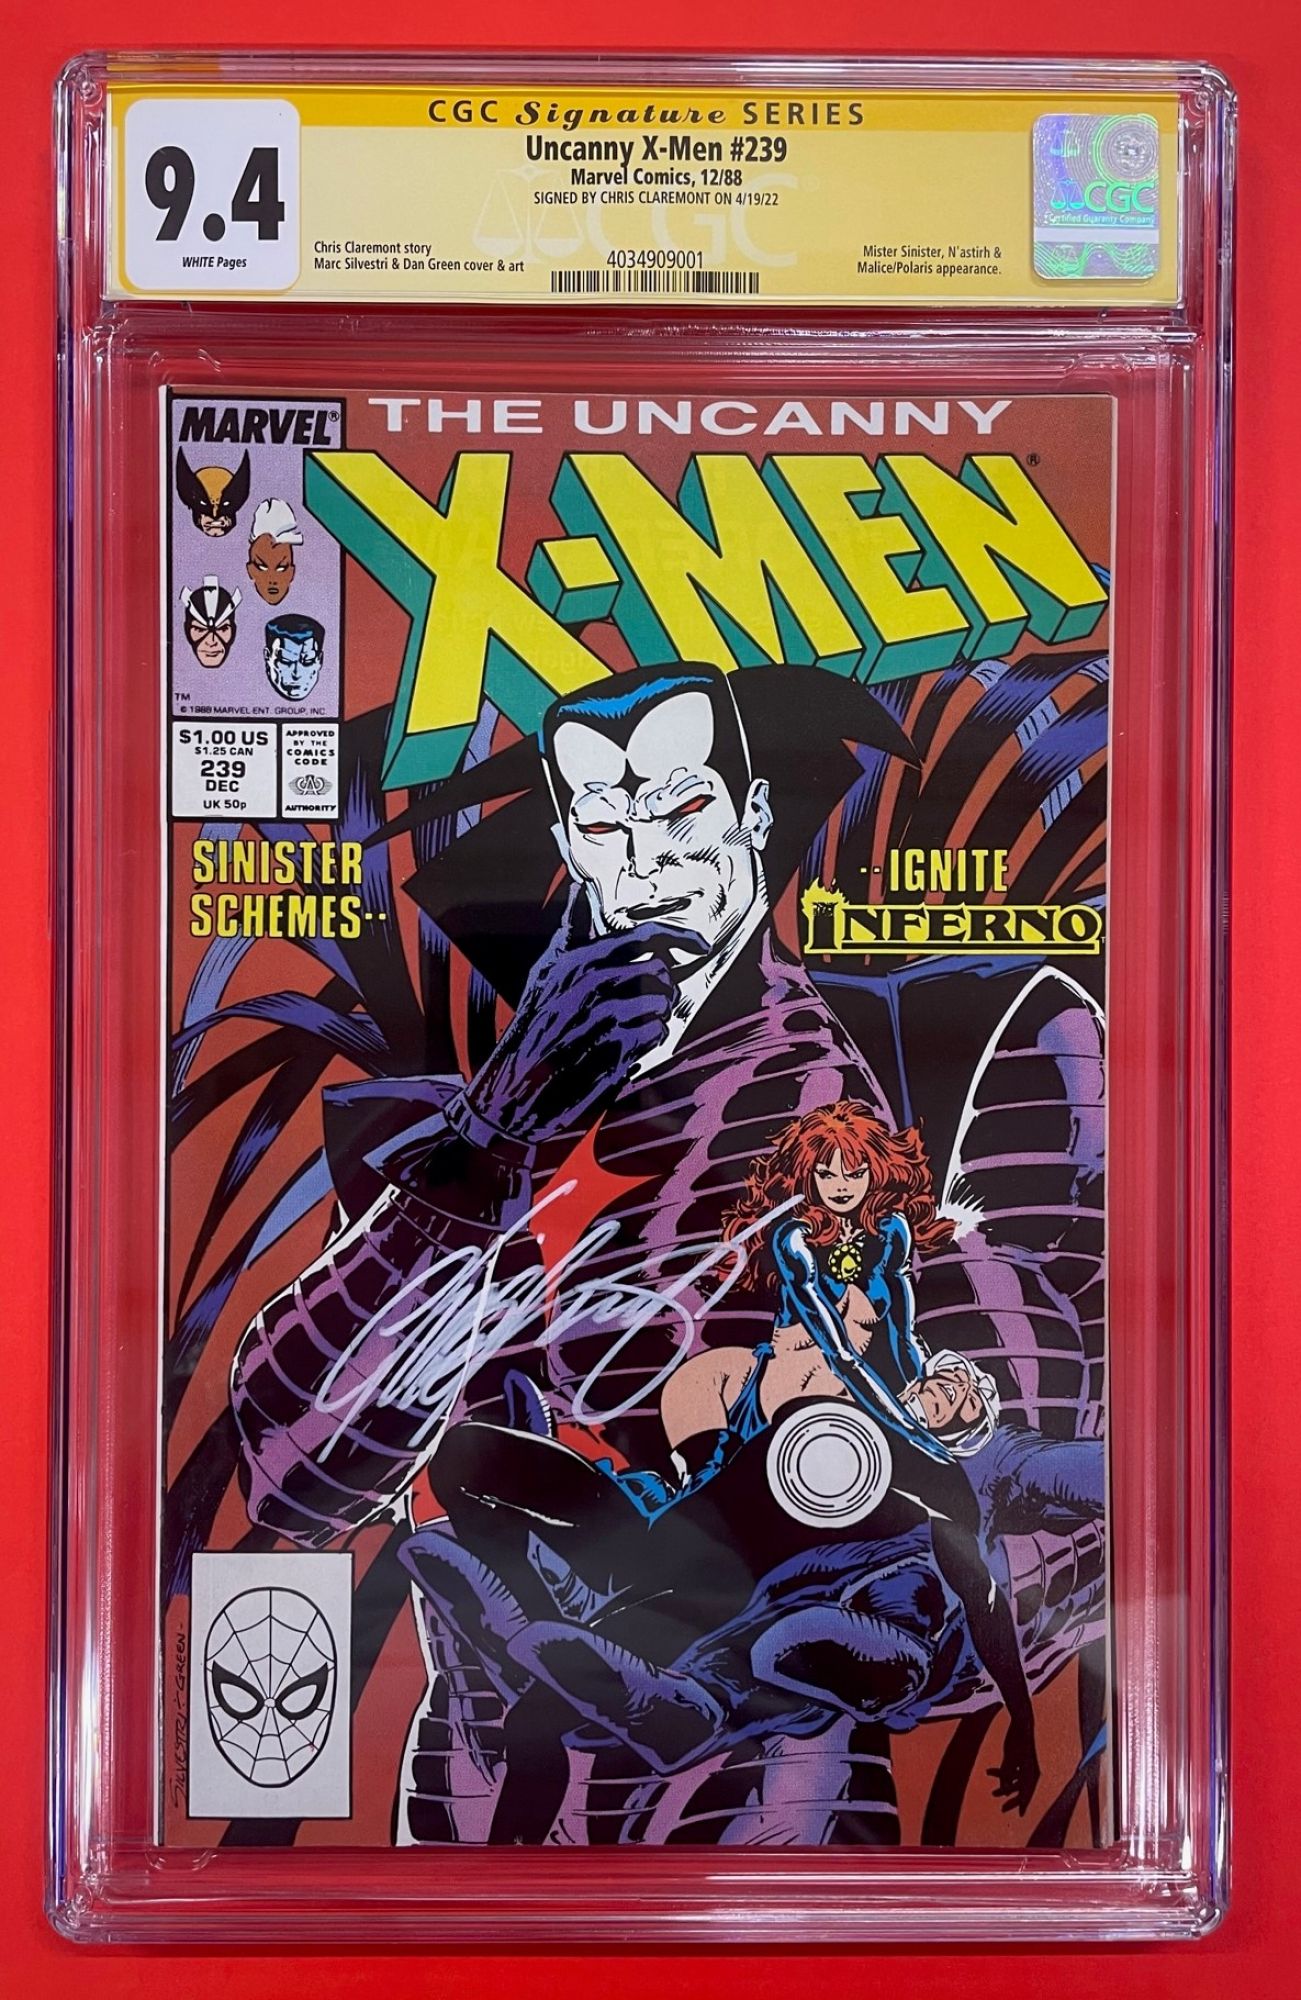 Uncanny X-Men #239, Dec 1988, 9.4 NM, CGC Signed Chris Claremont